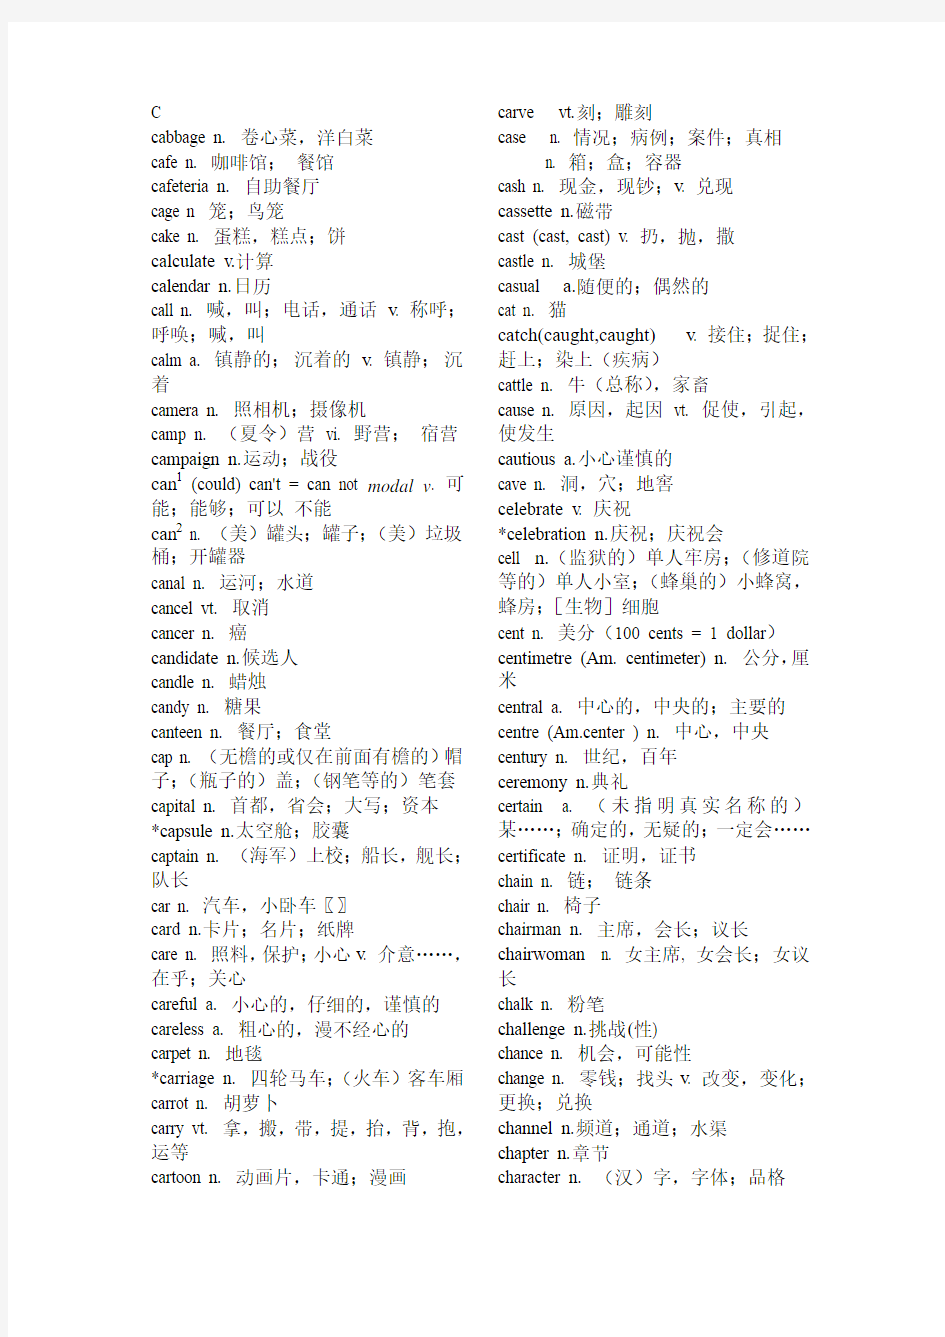 2011年高考英语词汇表(字母C开头)